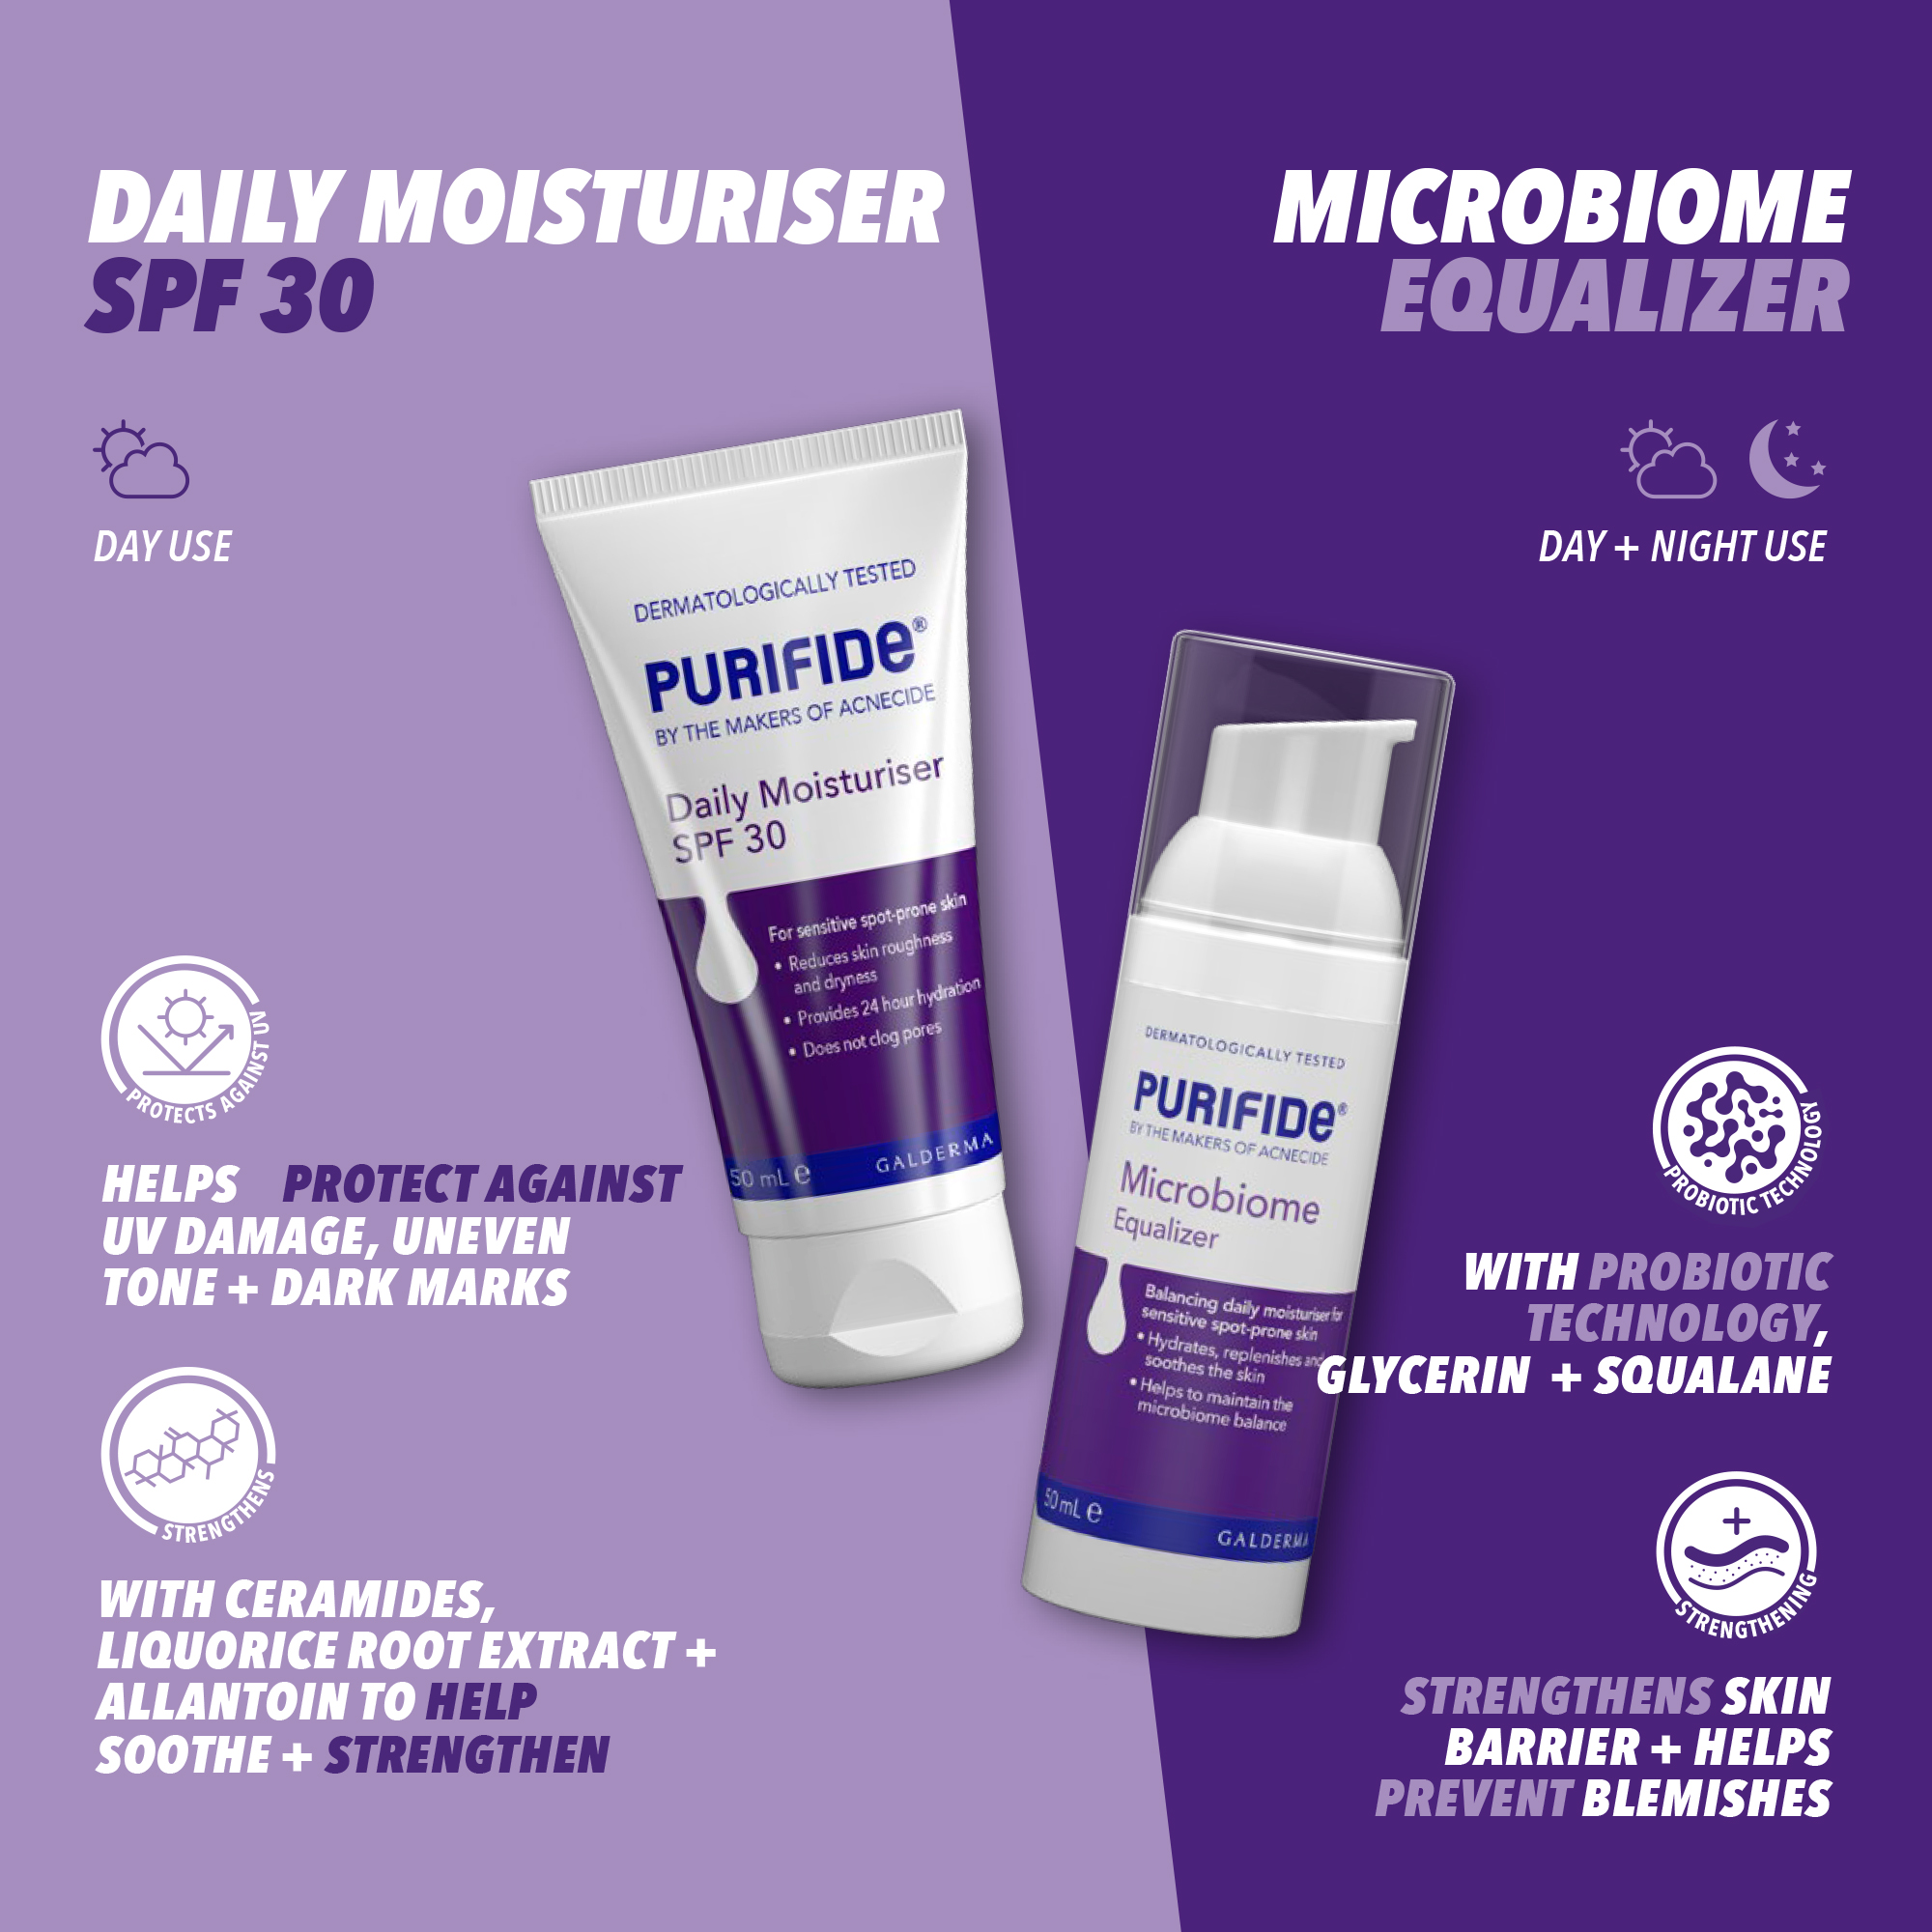 daily moisturiser SPF 30, microbiome equalizer